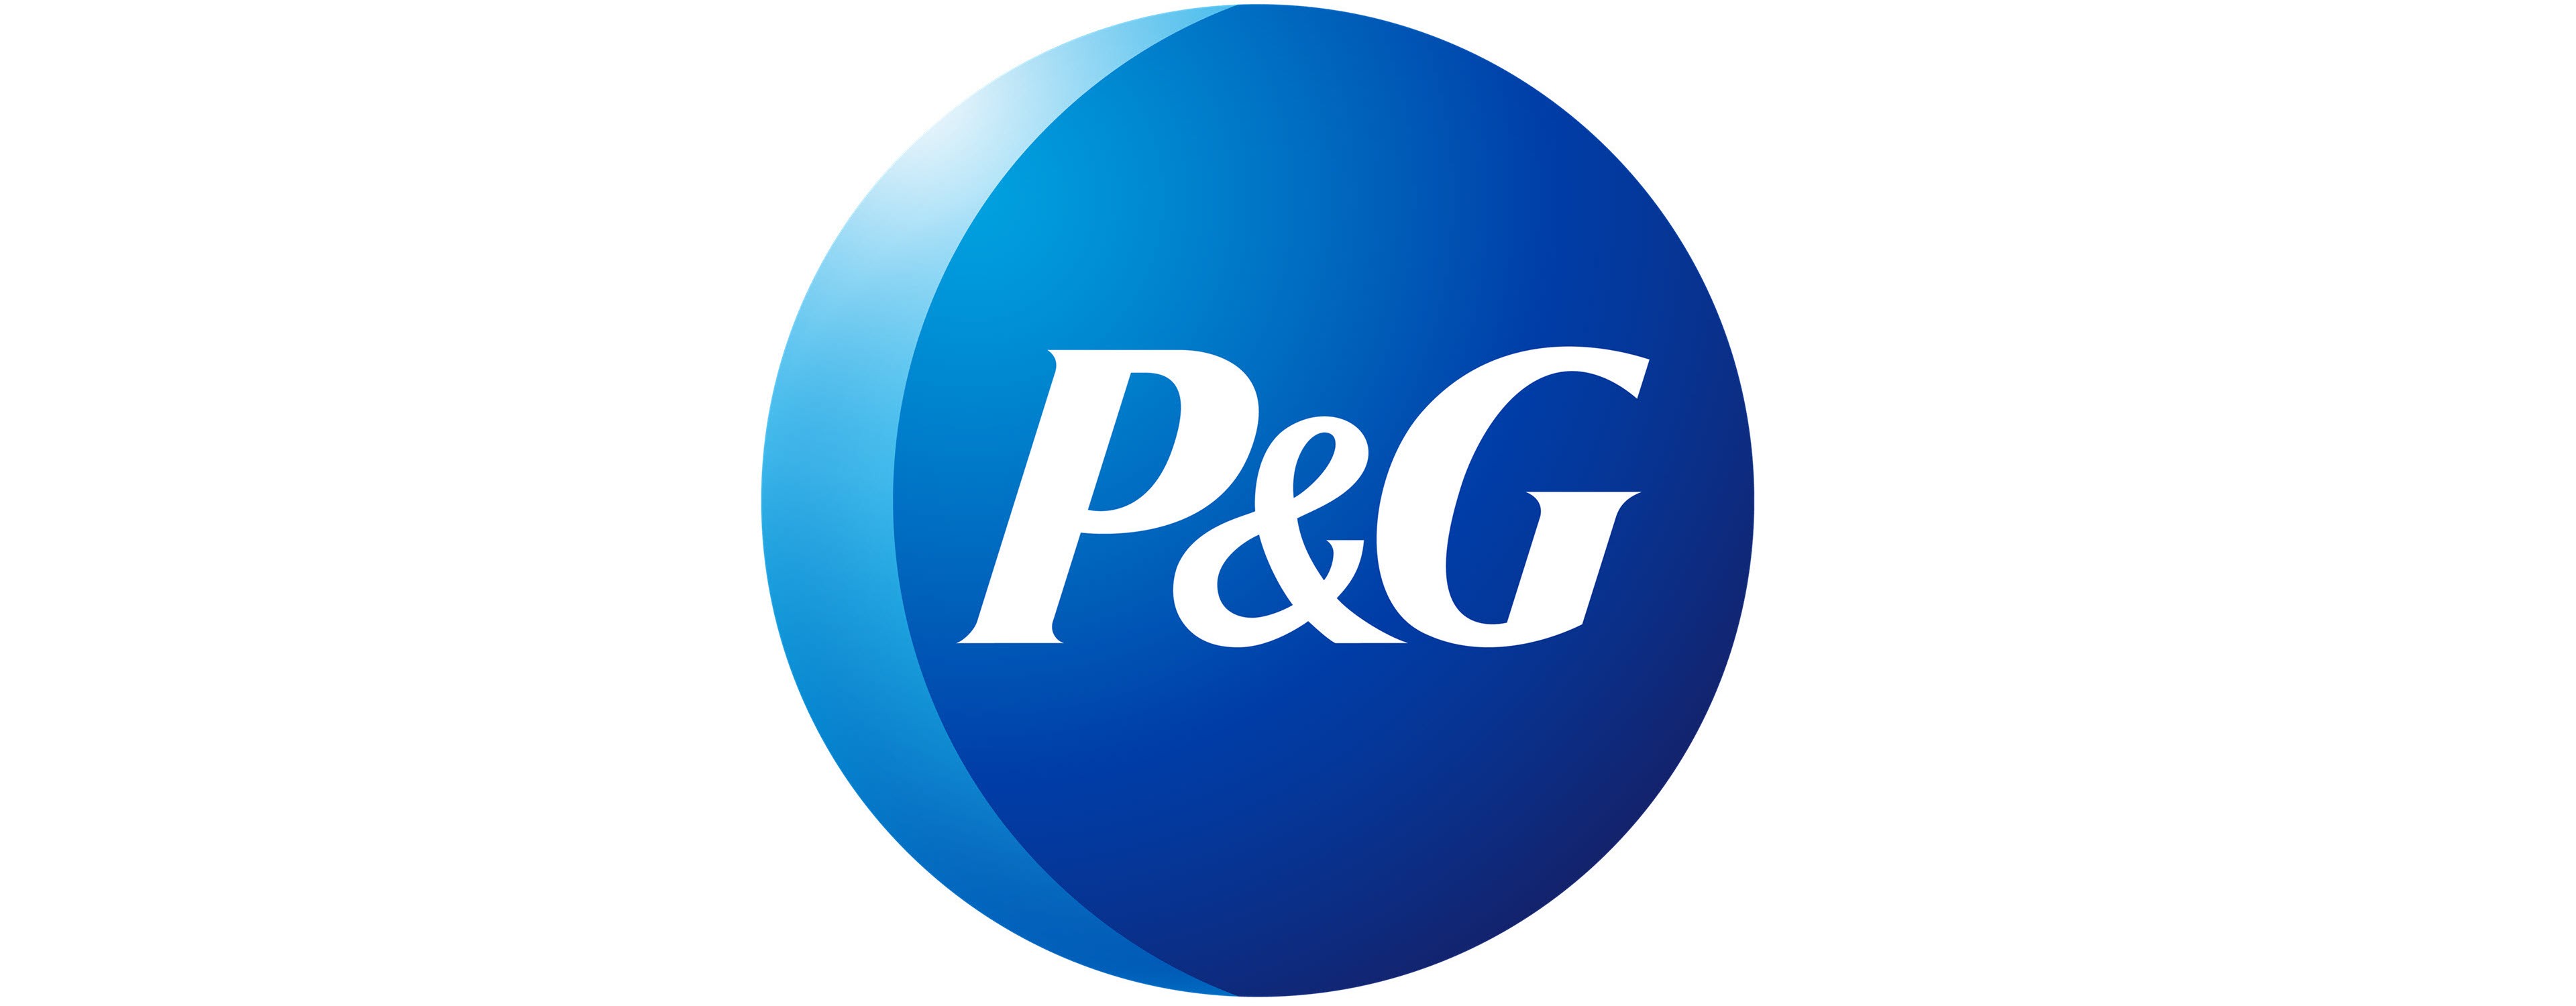             P&G-Logo        